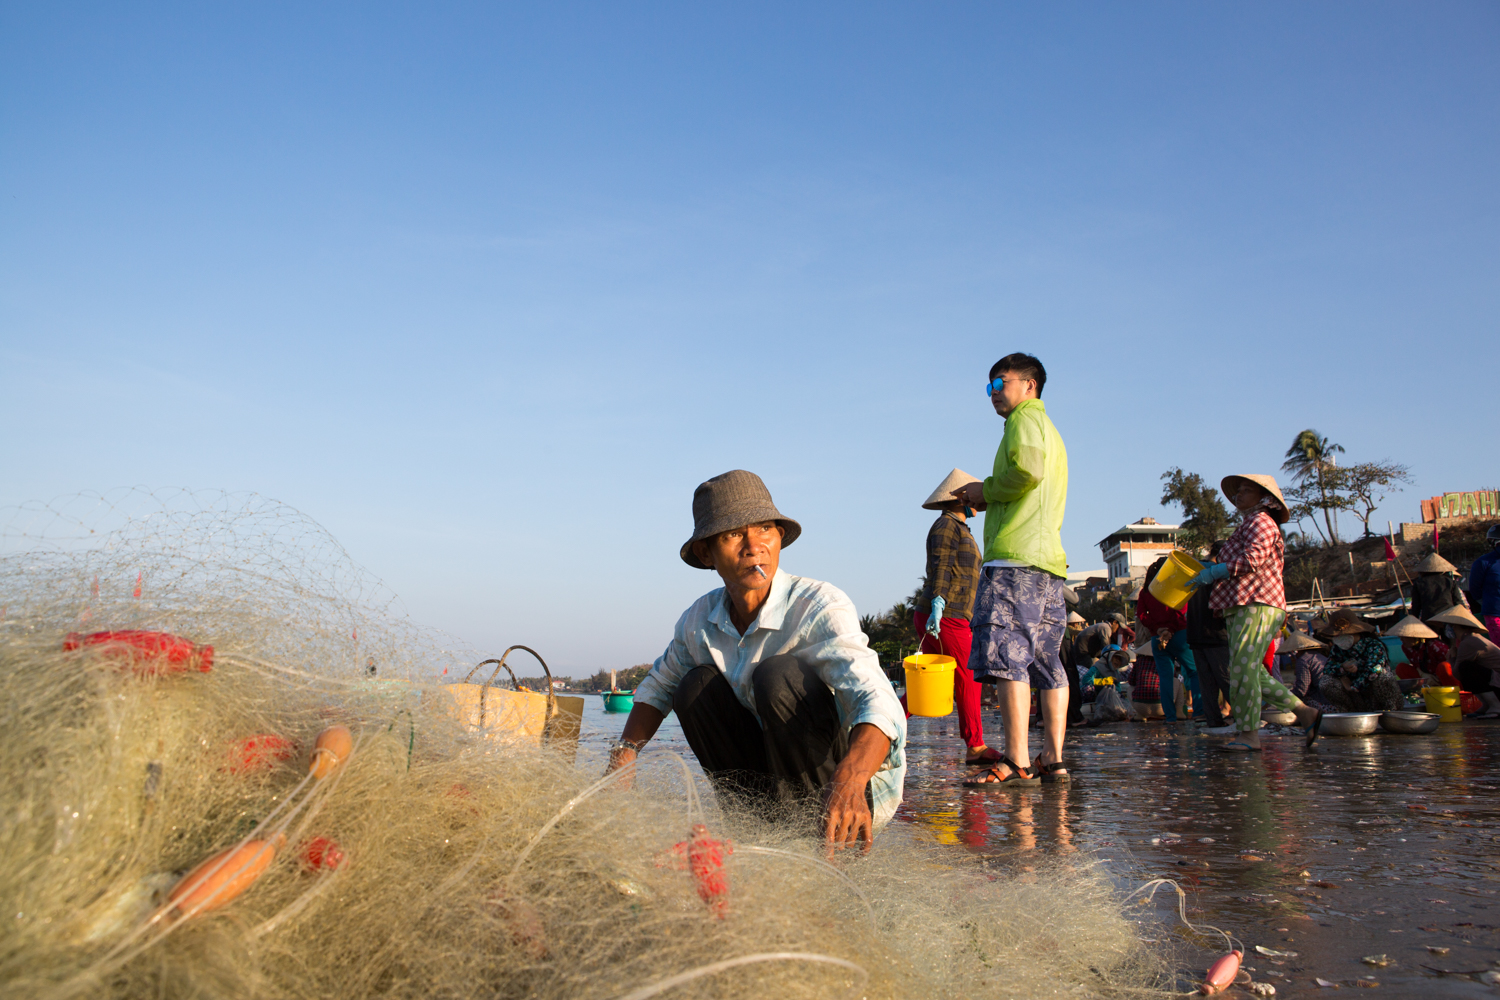 Eric Kruszewski photographs travel and fishing in Mue Ne, Vietnam.